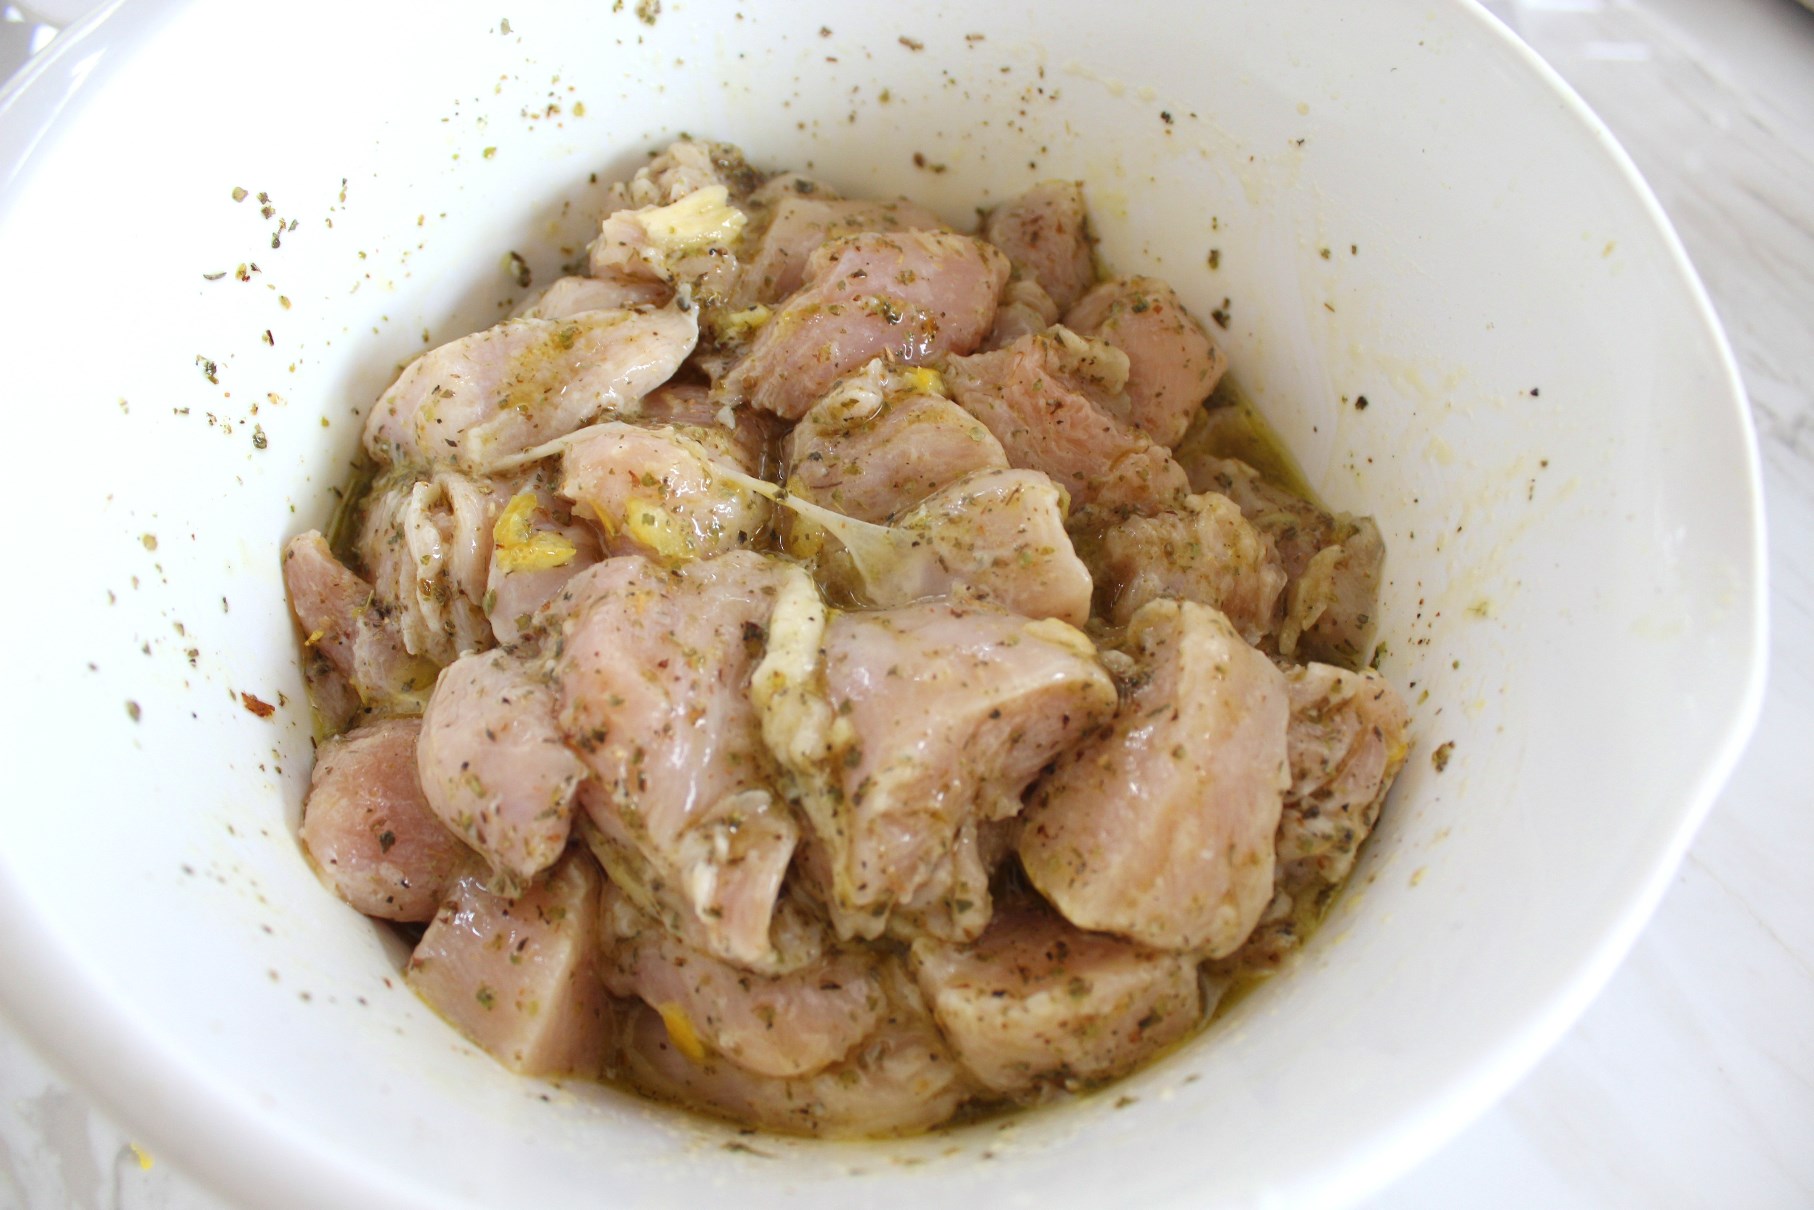 Chicken in marinade inside a bowl